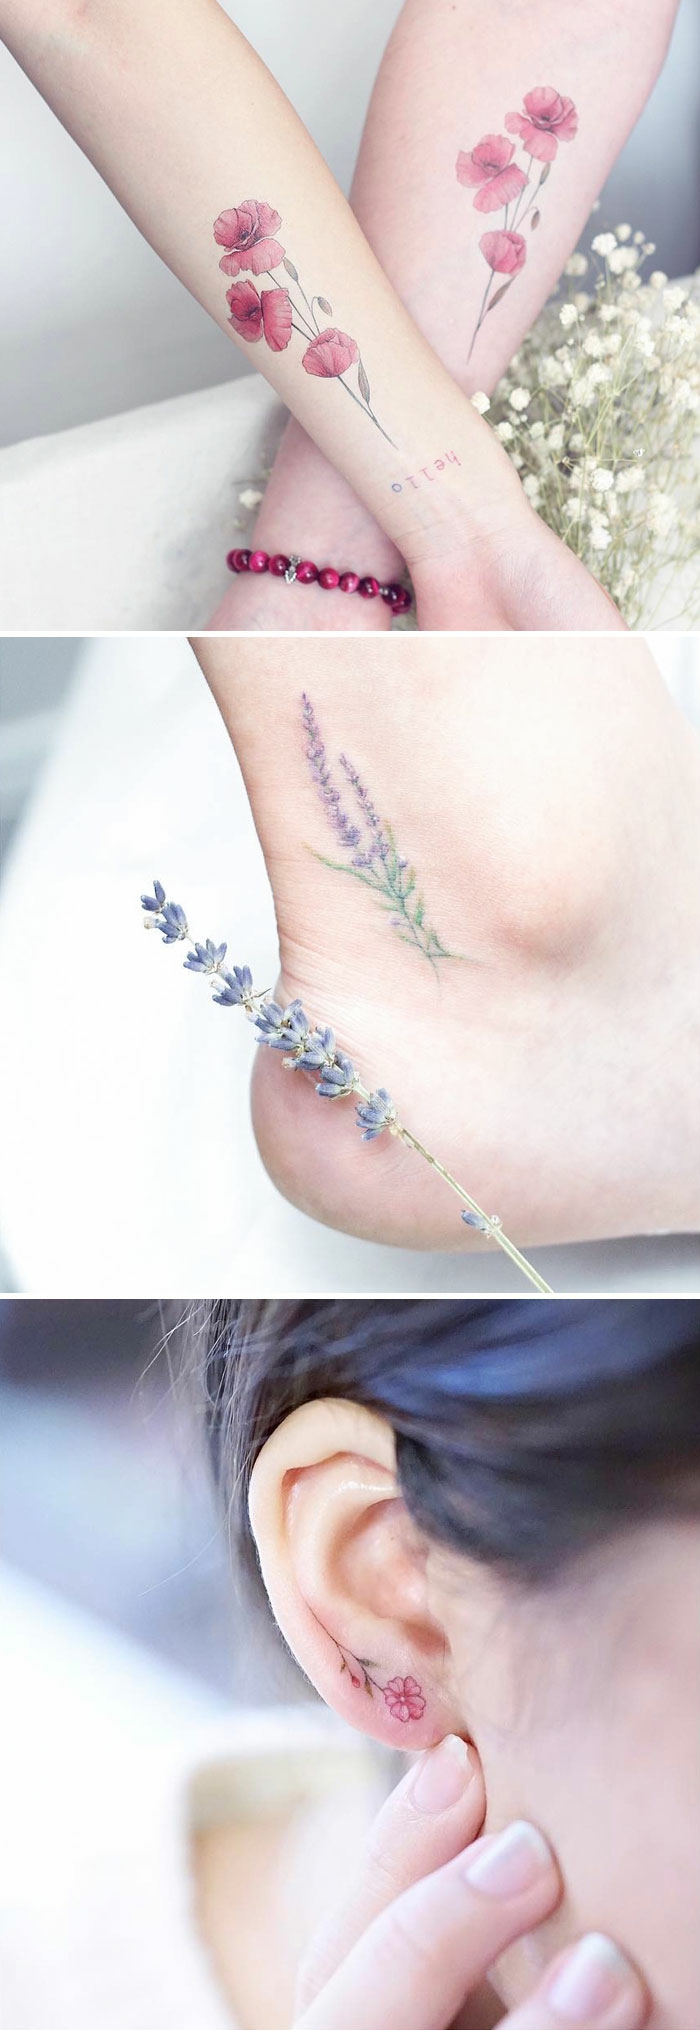 tatuaggio-fiore-mini-disegni-orecchio-caviglia-interno-polso-colorati-graziosi